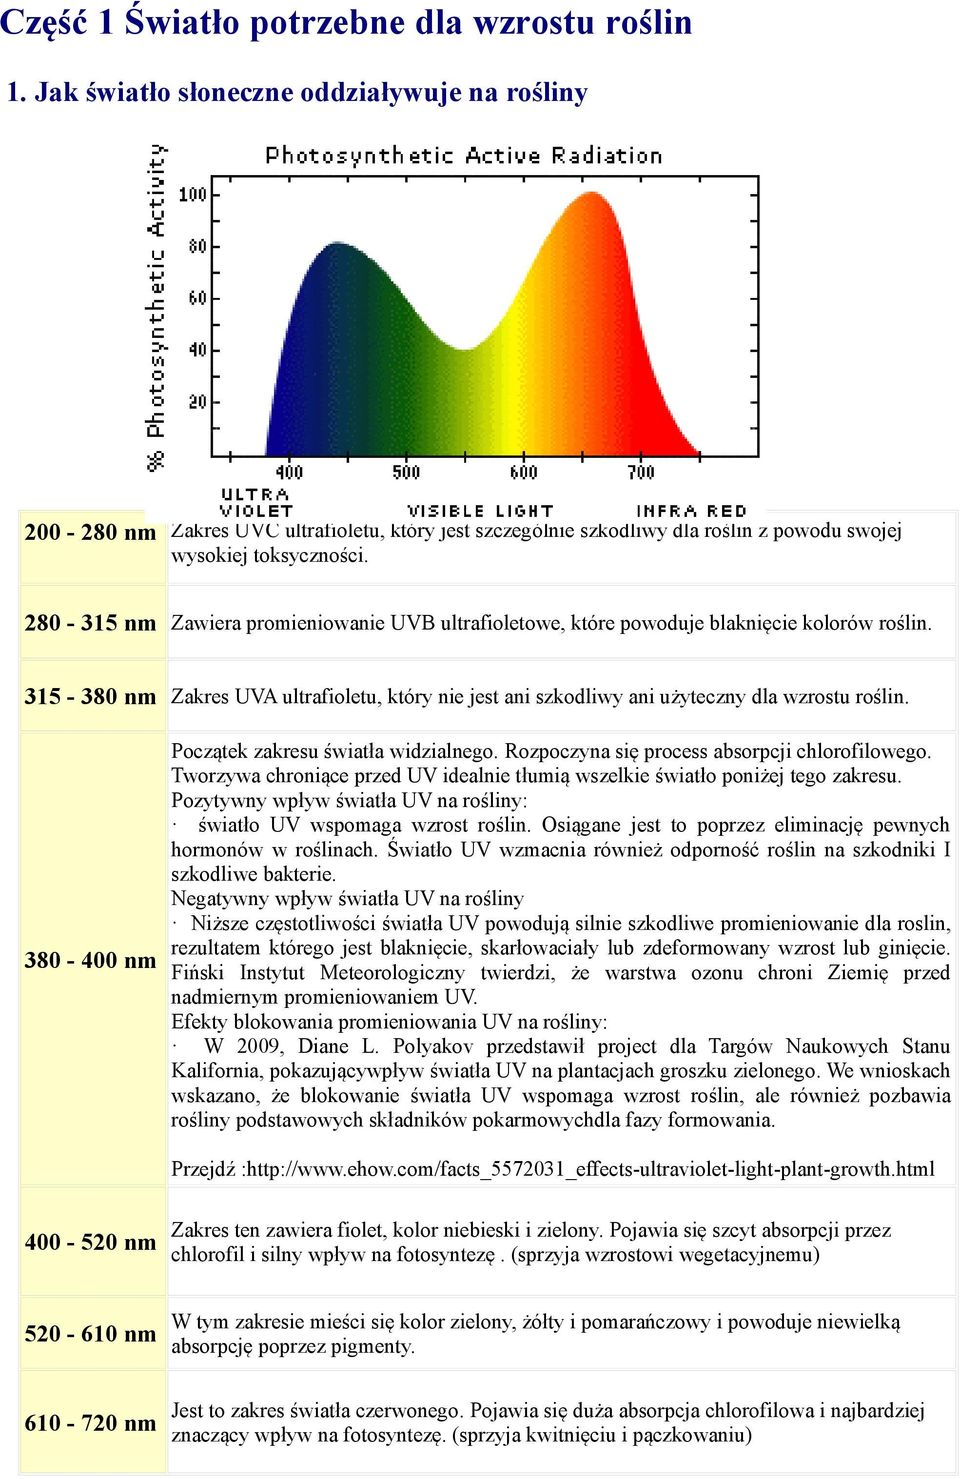 280-315 nm Zawiera promieniowanie UVB ultrafioletowe, które powoduje blaknięcie kolorów roślin. 315-380 nm Zakres UVA ultrafioletu, który nie jest ani szkodliwy ani użyteczny dla wzrostu roślin.